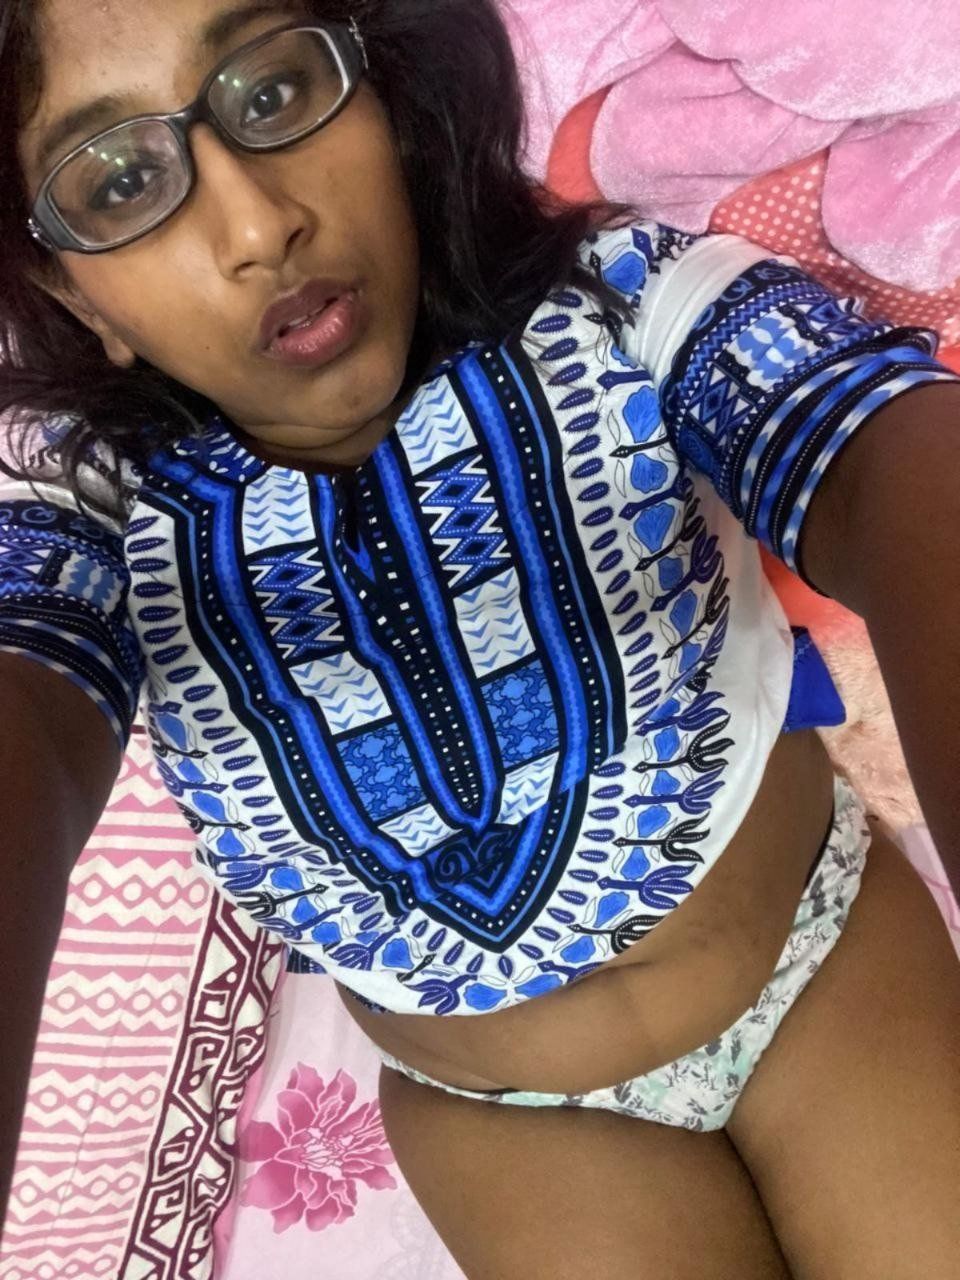 Telugu Horny Girlfriend Nude Teasing Selfies Indian Nude Girls